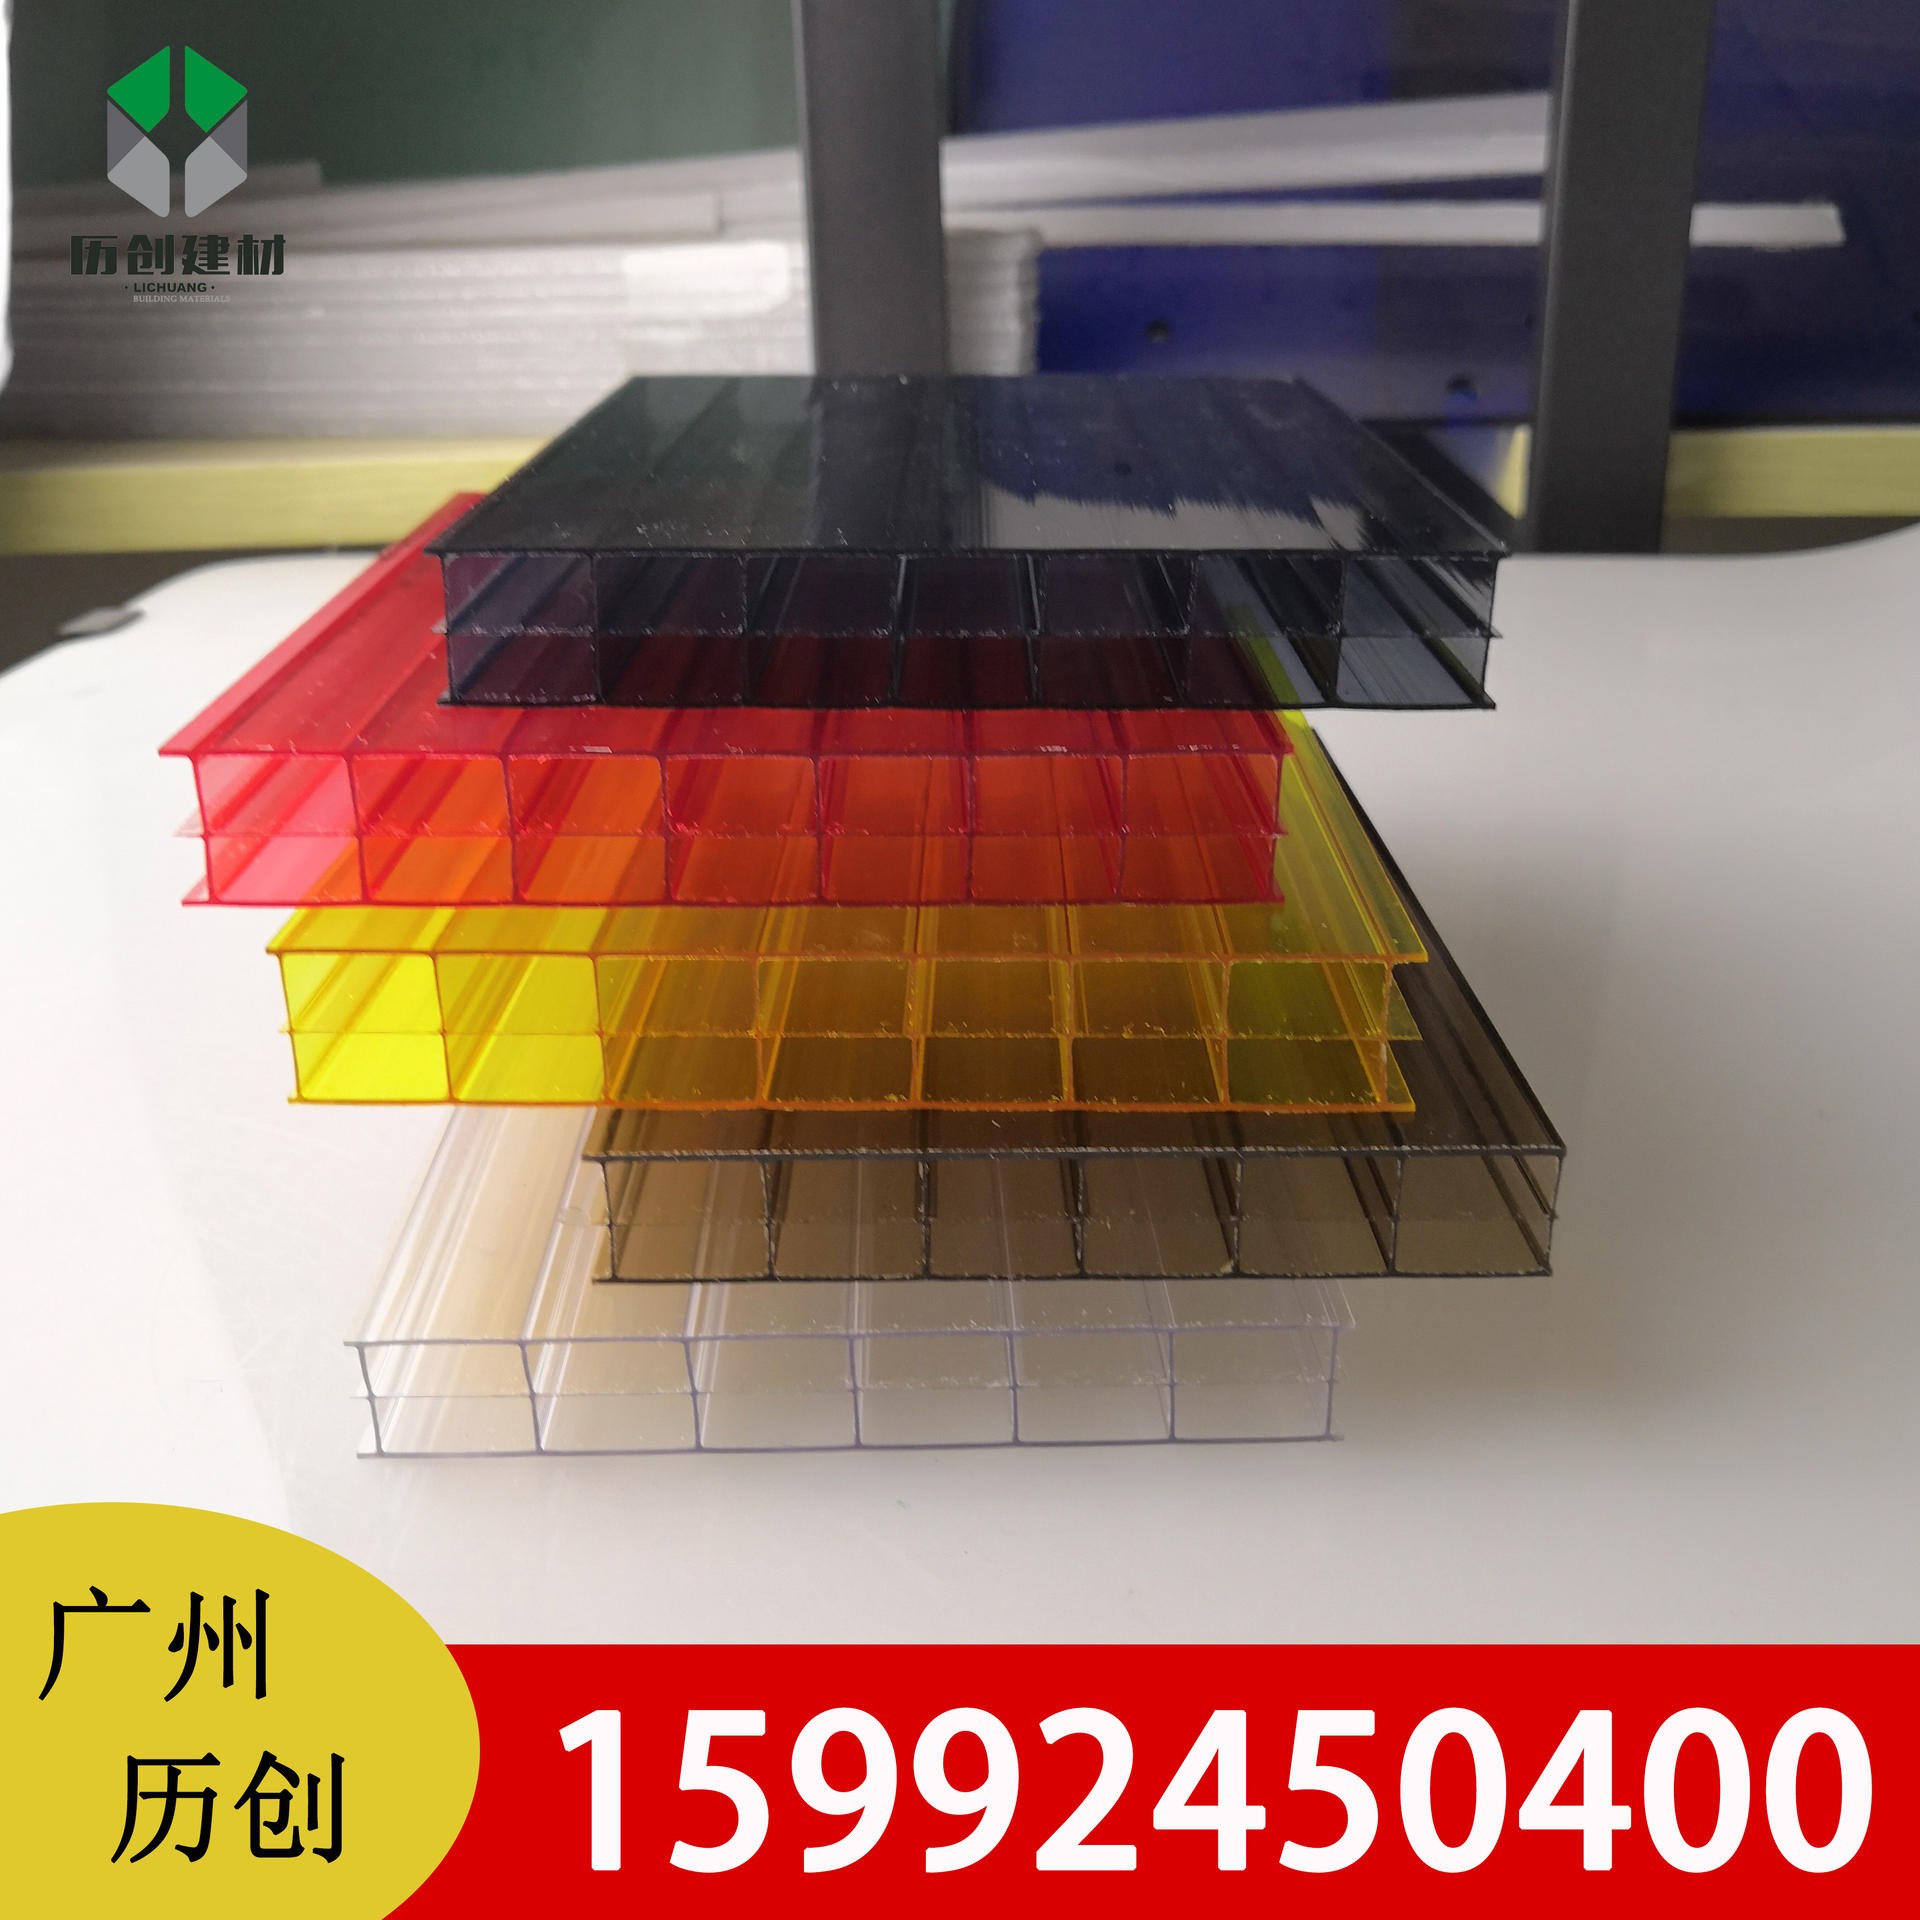 广州历创 三层pc阳光板定制热销产品板材加工隔音降噪